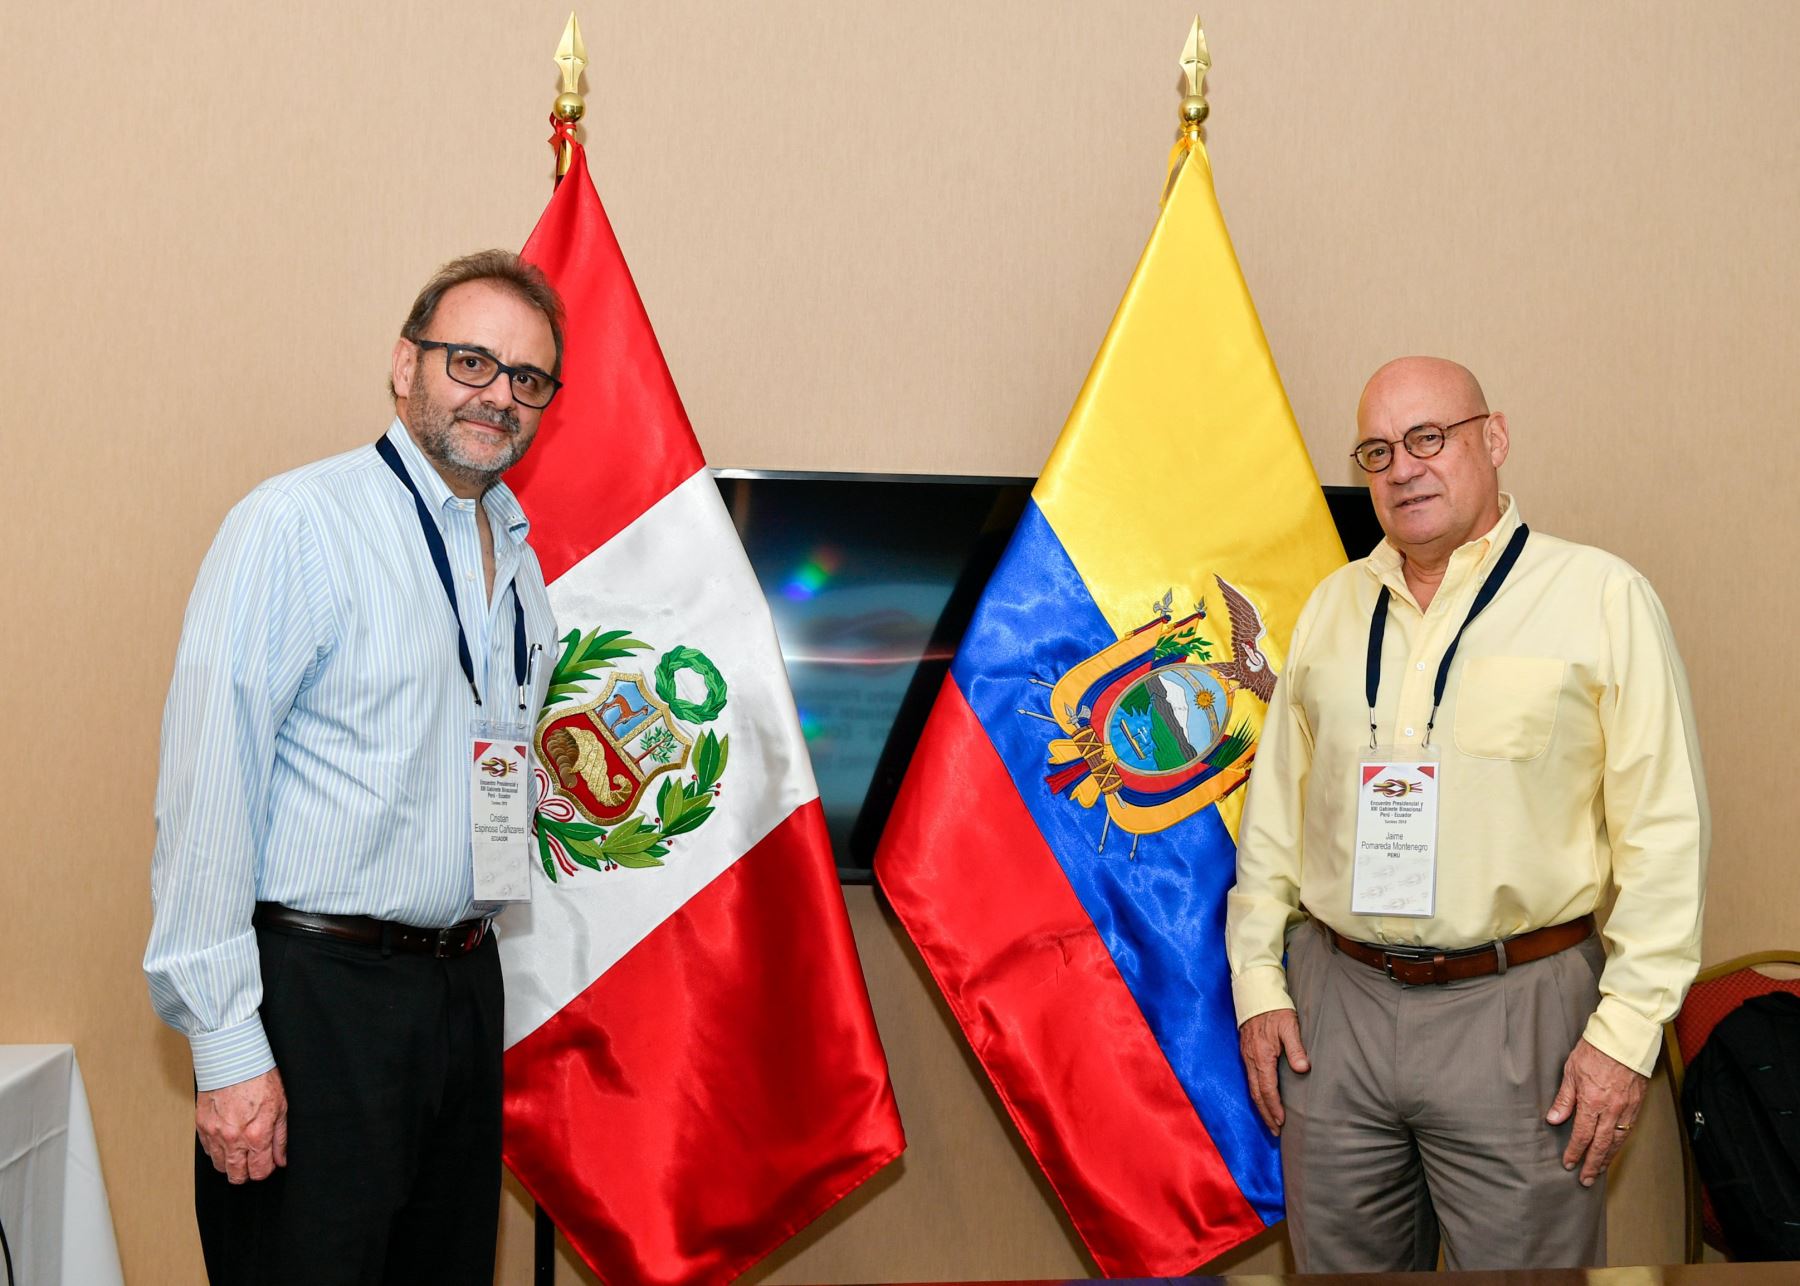 Vicecancilleres de Perú y Ecuador ultiman detalles de XIII Gabinete Binacional